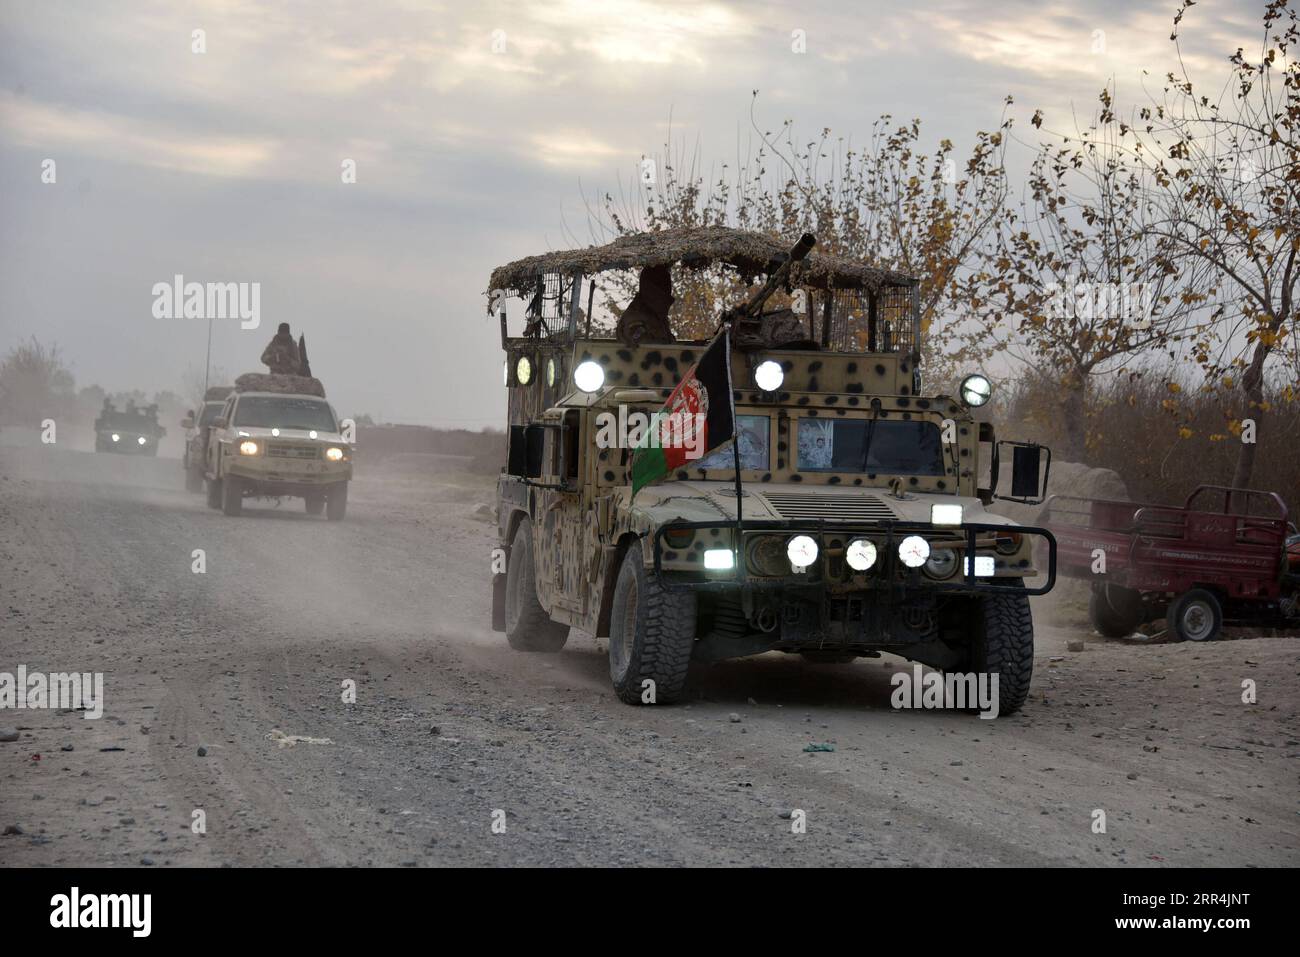 201206 -- KANDAHAR AFGHANISTAN, 6. Dezember 2020 -- Foto vom 5. Dezember 2020 zeigt Militärfahrzeuge während einer Militäroperation in der Provinz Kandahar, Afghanistan. Mindestens 18 Militante wurden in der südlichen Provinz Kandahar, der ehemaligen Festung der Taliban-Ausrüstung, getötet, sagte eine Erklärung des Verteidigungsministeriums, die hier am Sonntag veröffentlicht wurde. Foto: /Xinhua AFGHANISTAN-KANDAHAR-MILITÄROPERATION SanaullahxSeiam PUBLICATIONxNOTxINxCHN Stockfoto